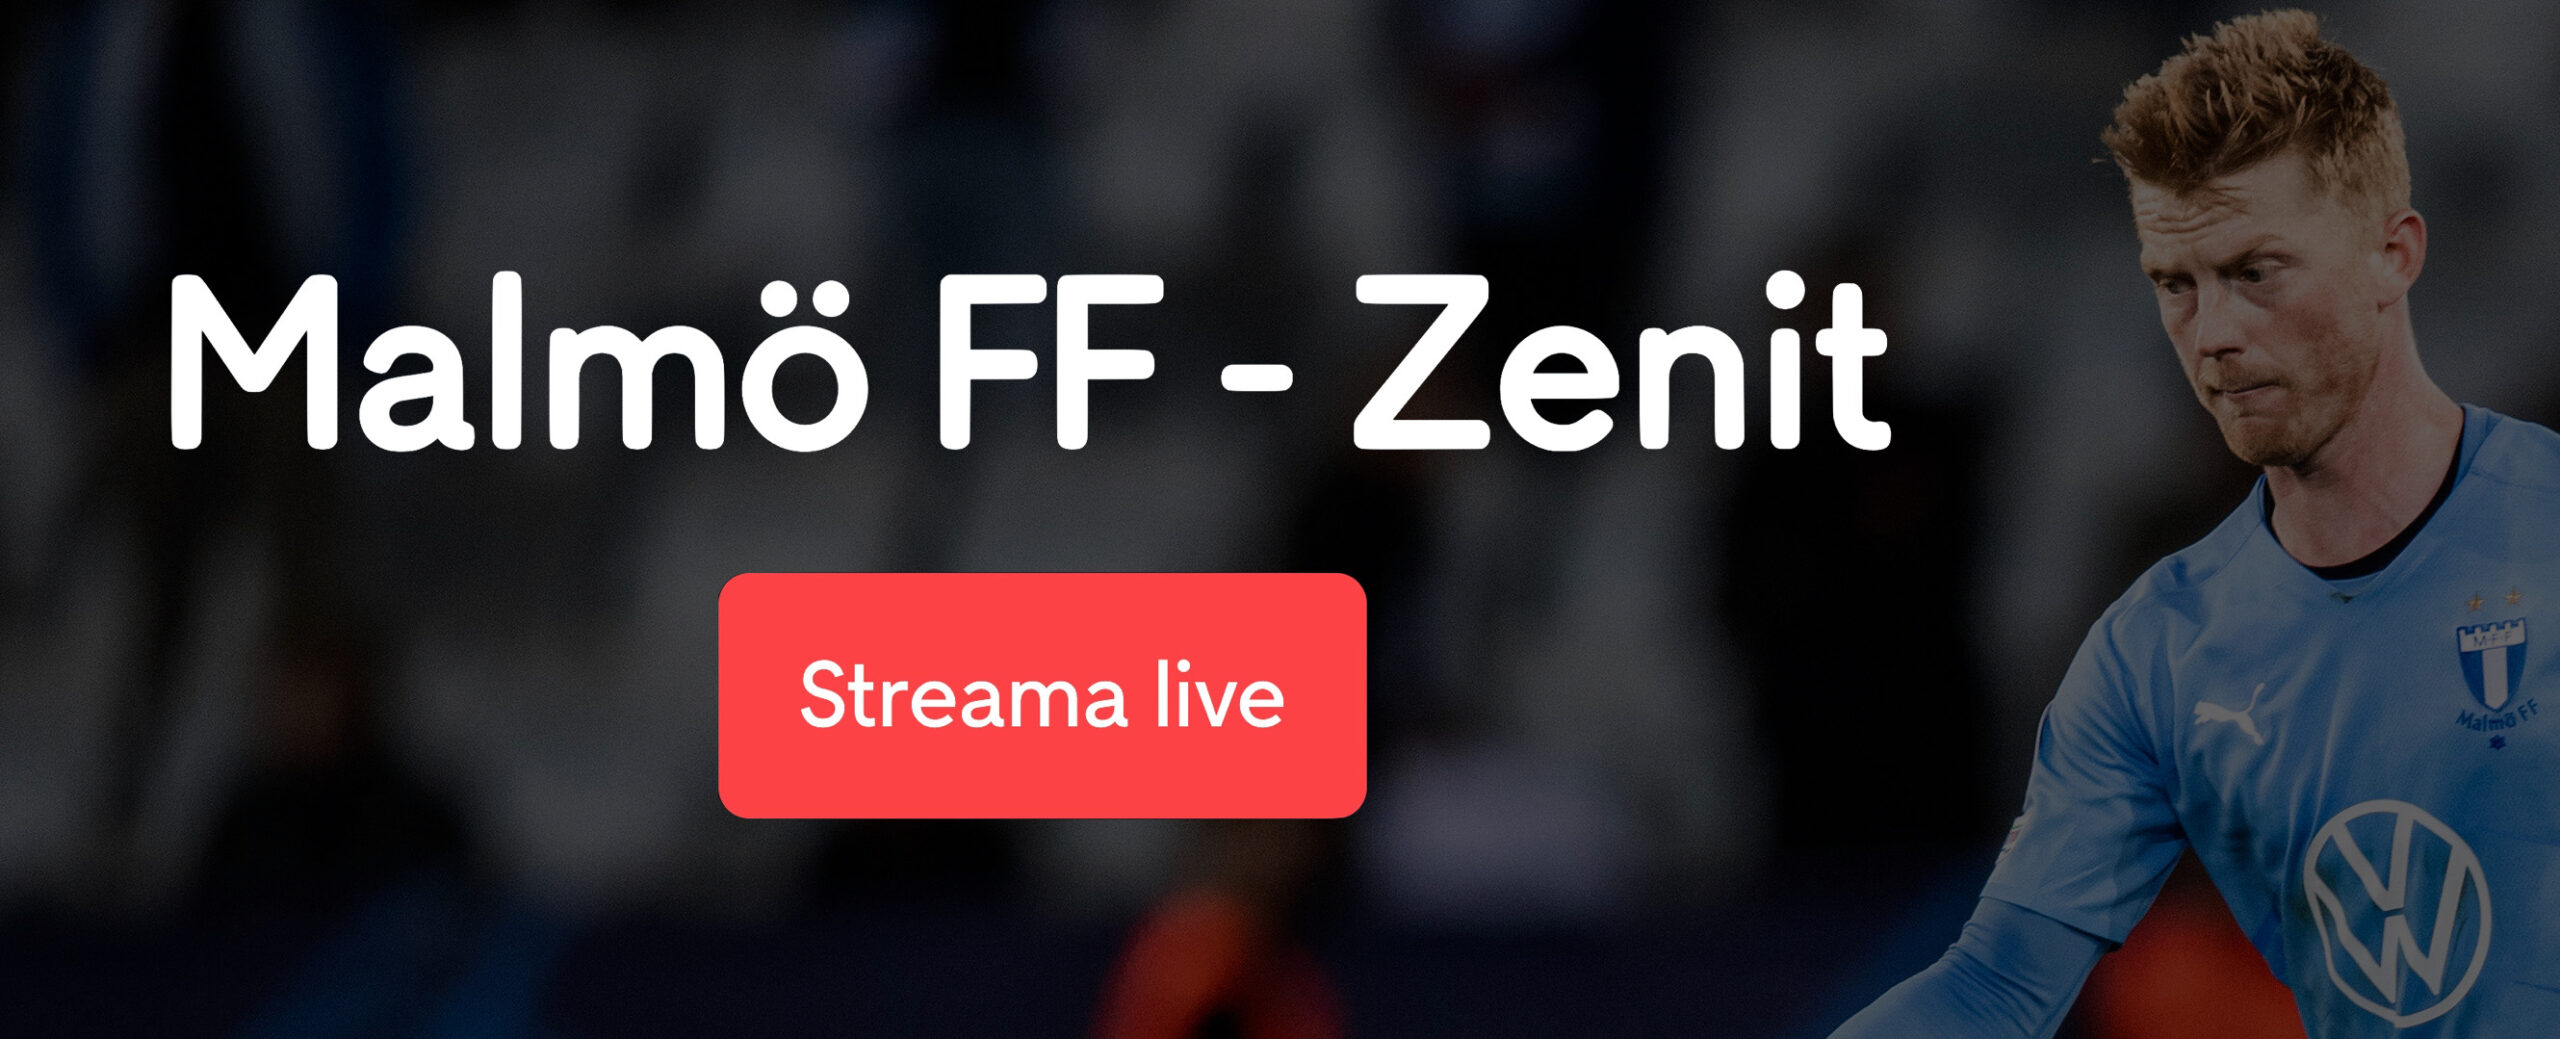 Malmö FF Zenit stream gratis? Streama MFF Zenit live stream free online!